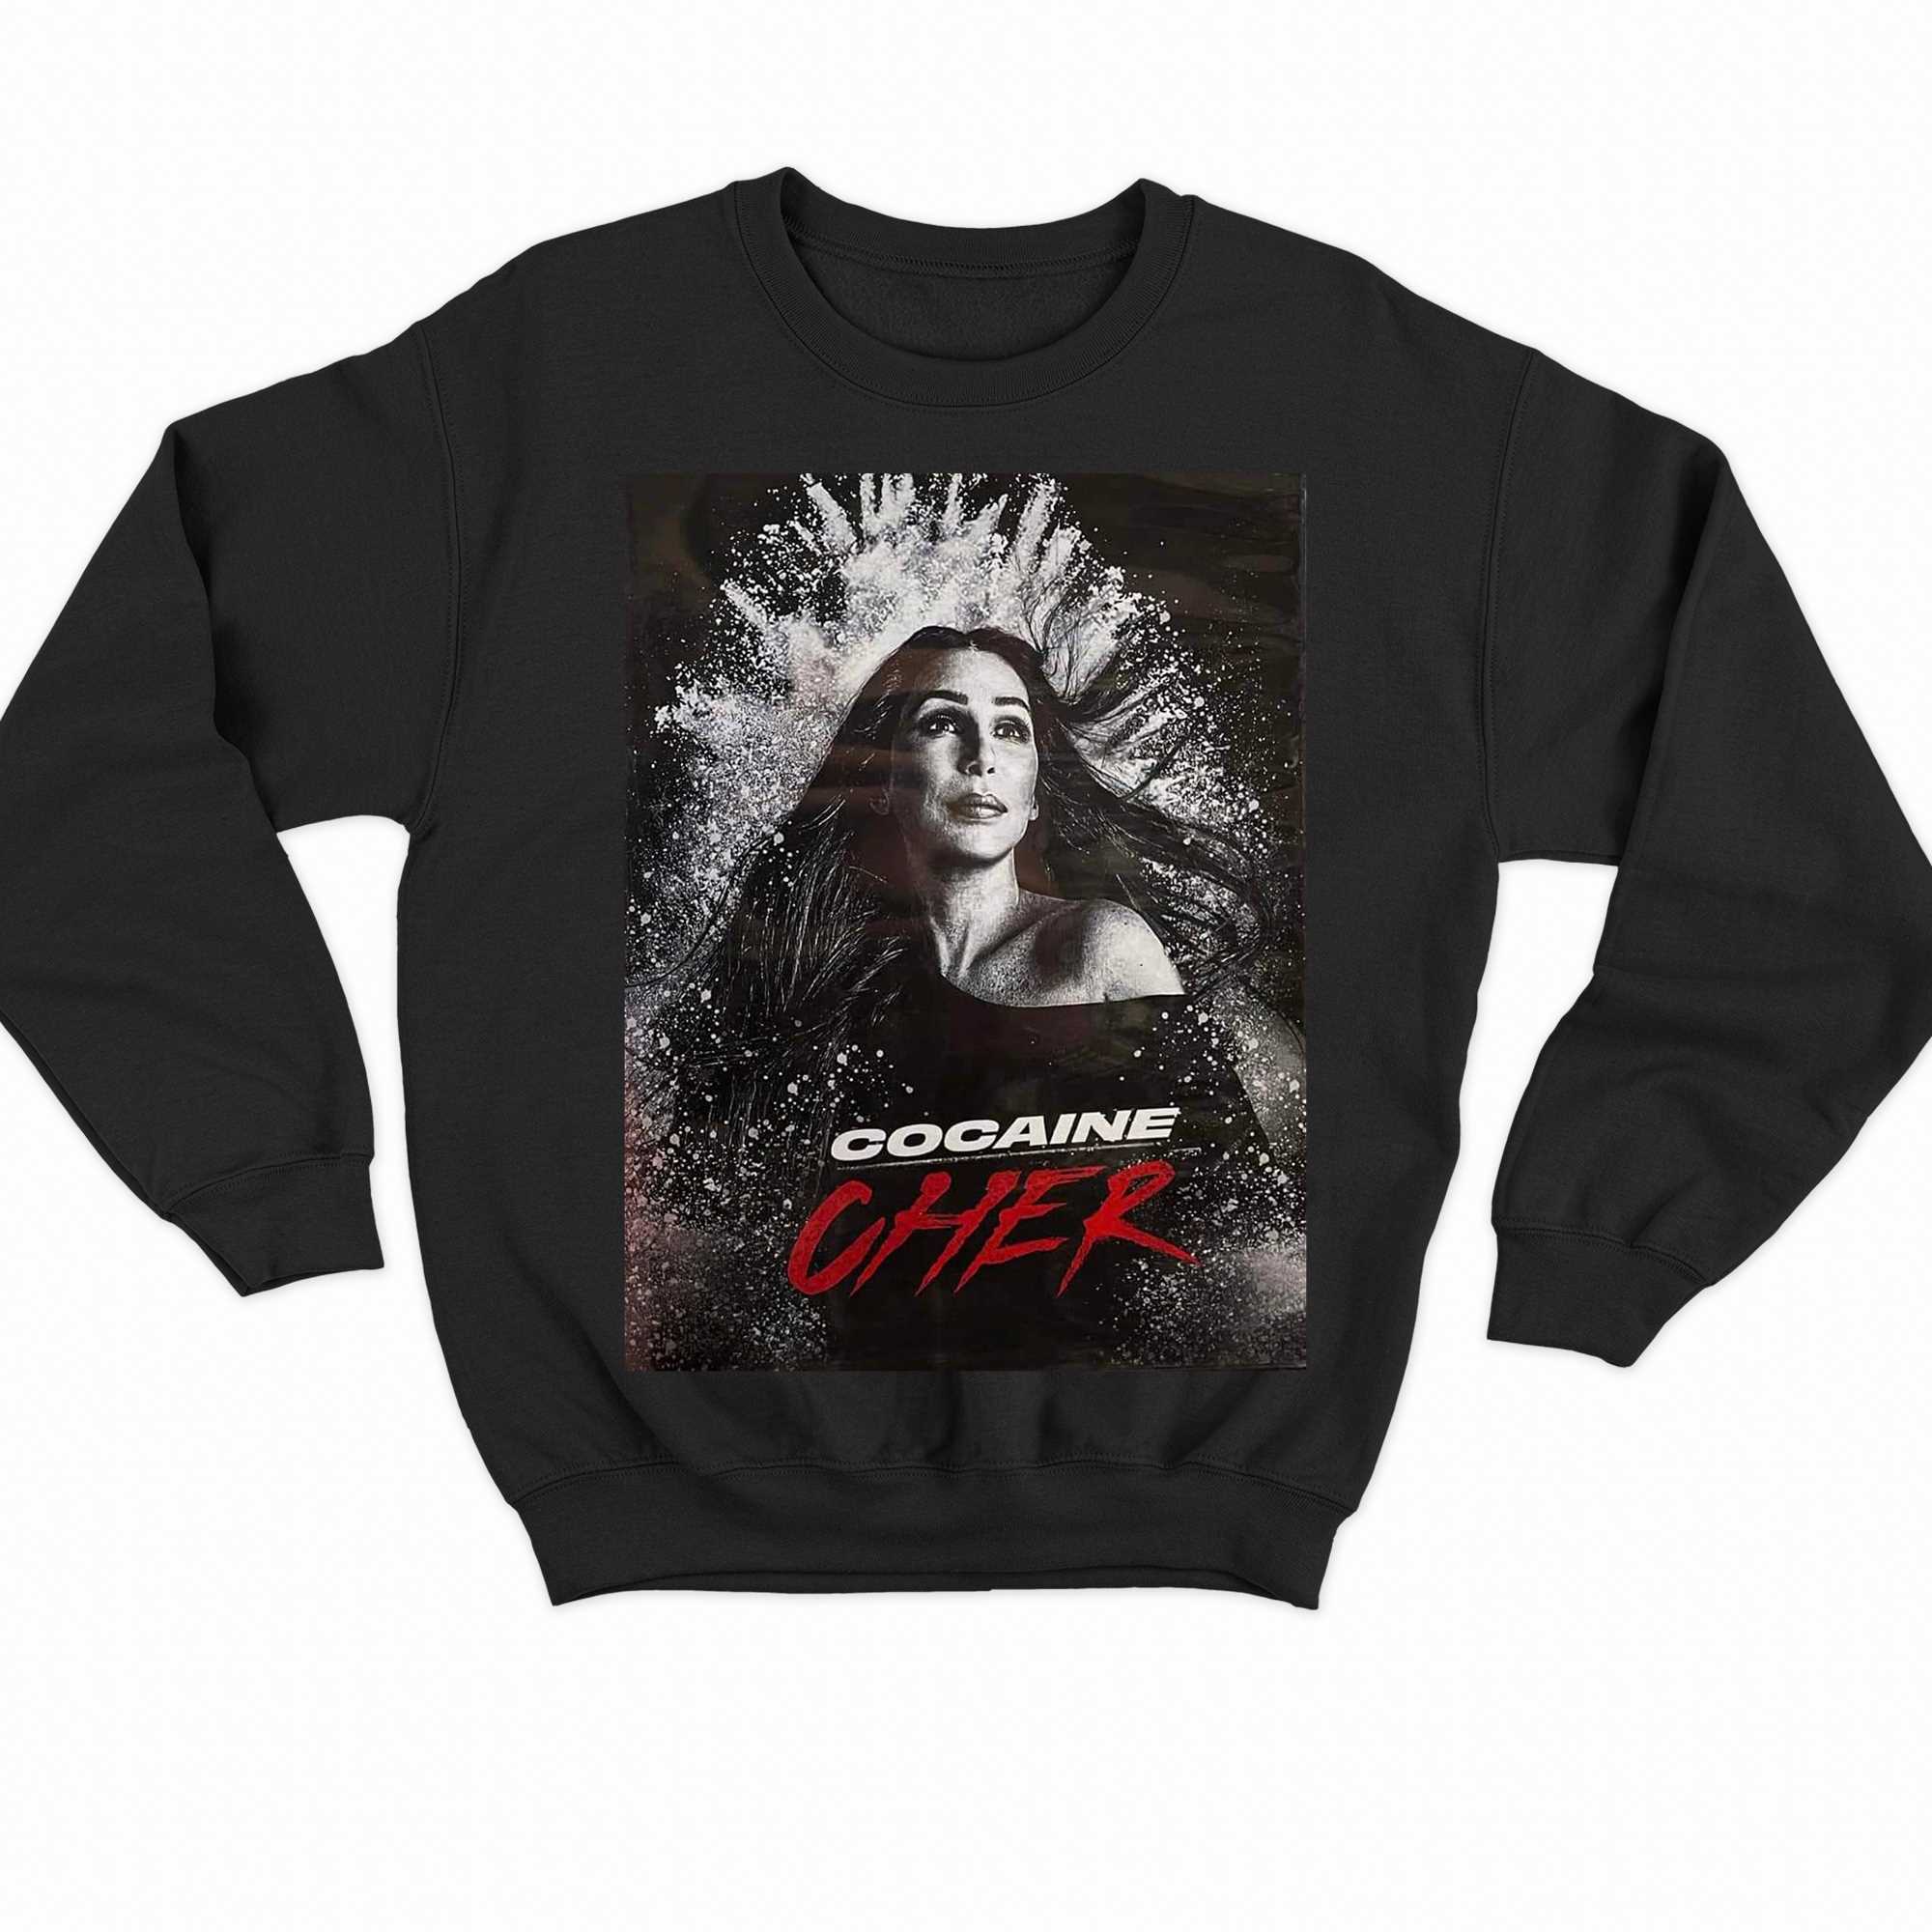 Cocaine Cher T-shirt 